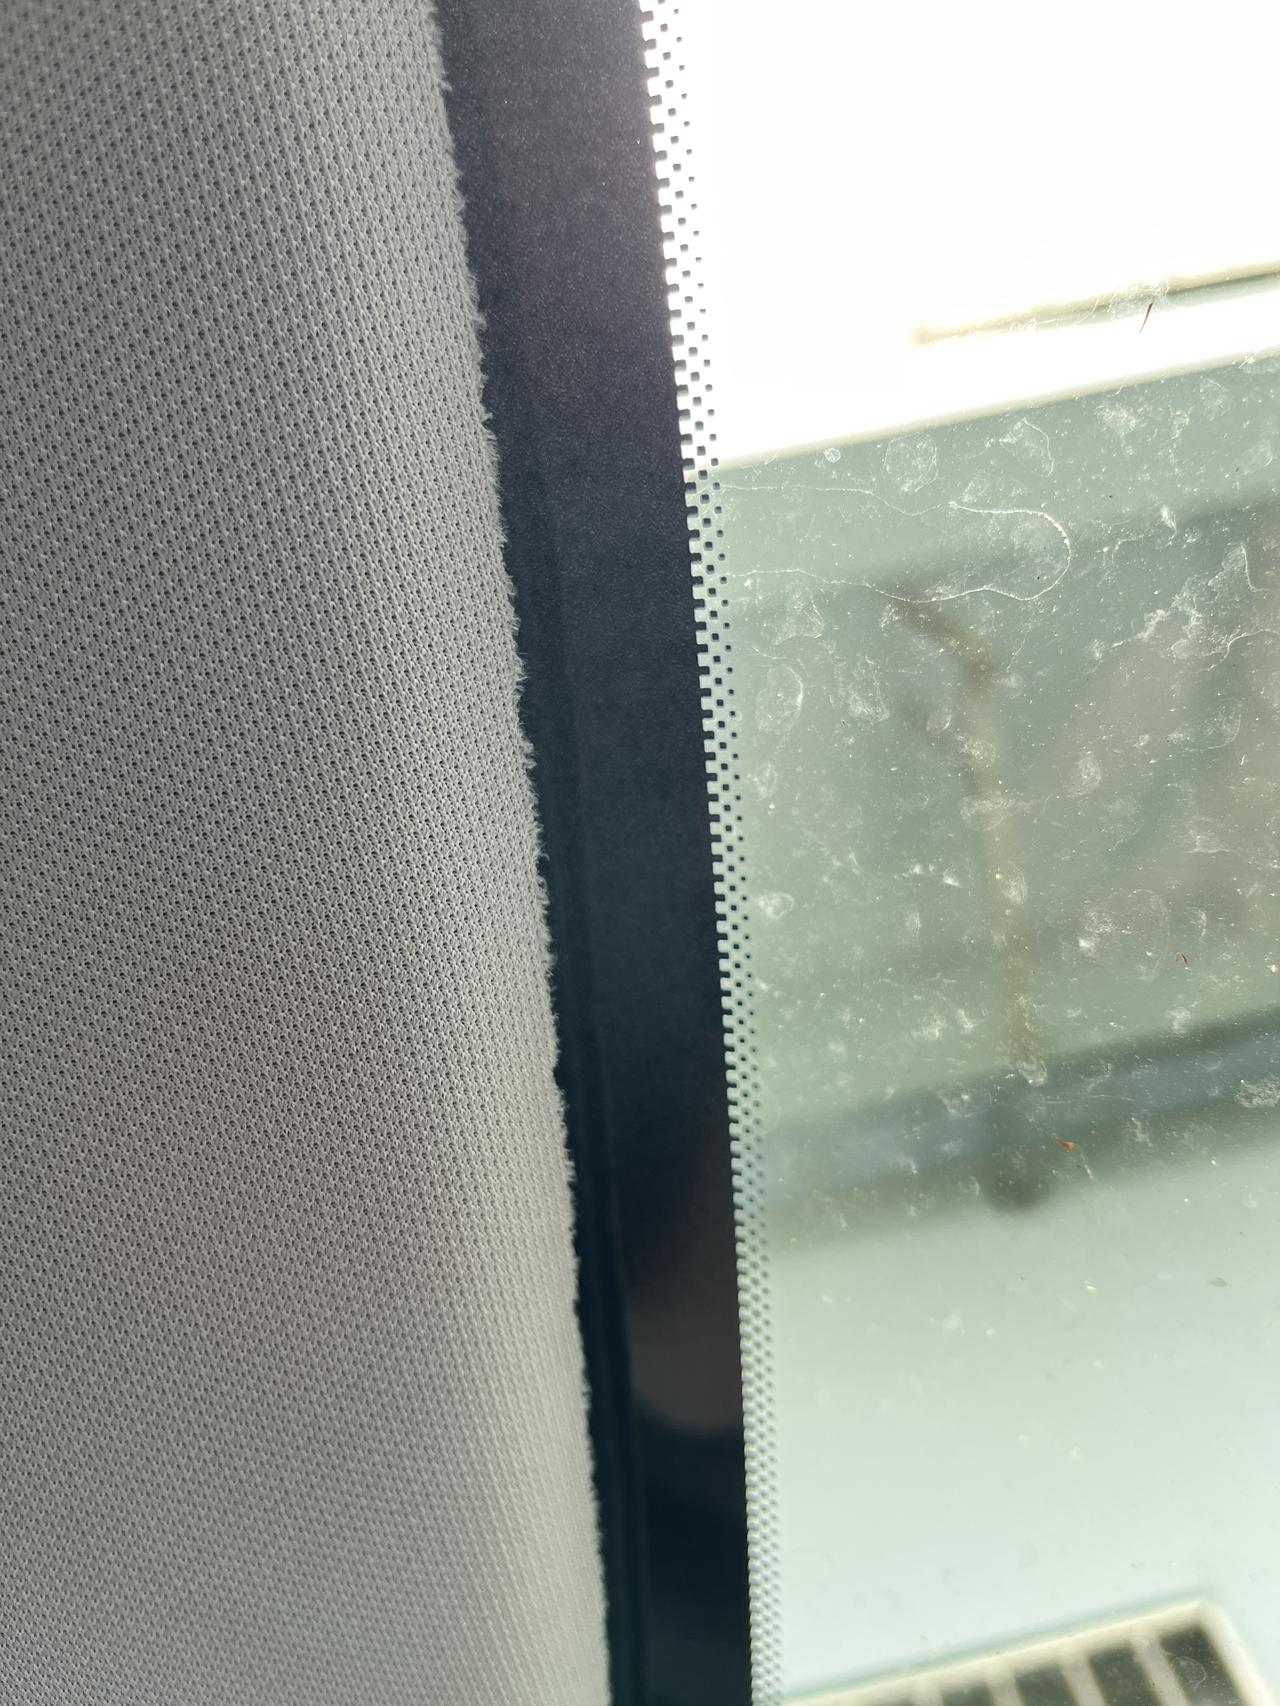 雪铁龙凡尔赛C5 X 今天装行车记录仪发现前档玻璃这里海绵的做工很毛，副驾驶座位下面的是用钉子钉的，各位车友也是这样的吗